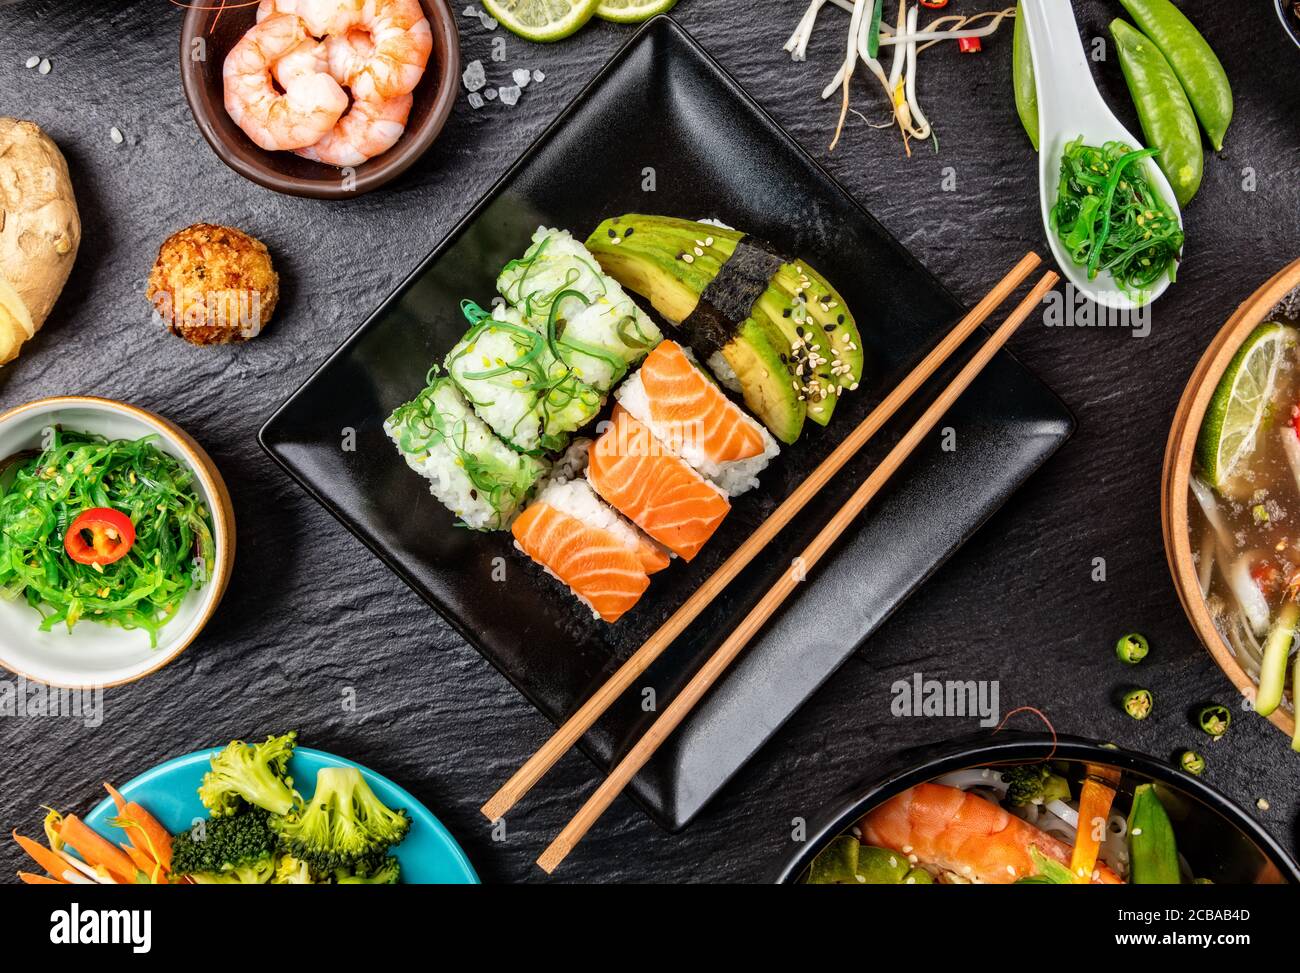 Asiatische Sushi Variation mit vielen Arten von Mahlzeiten. Kari, Suppe, Reis und Gemüse. Ansicht von oben, auf schwarzen Stein serviert. Stockfoto